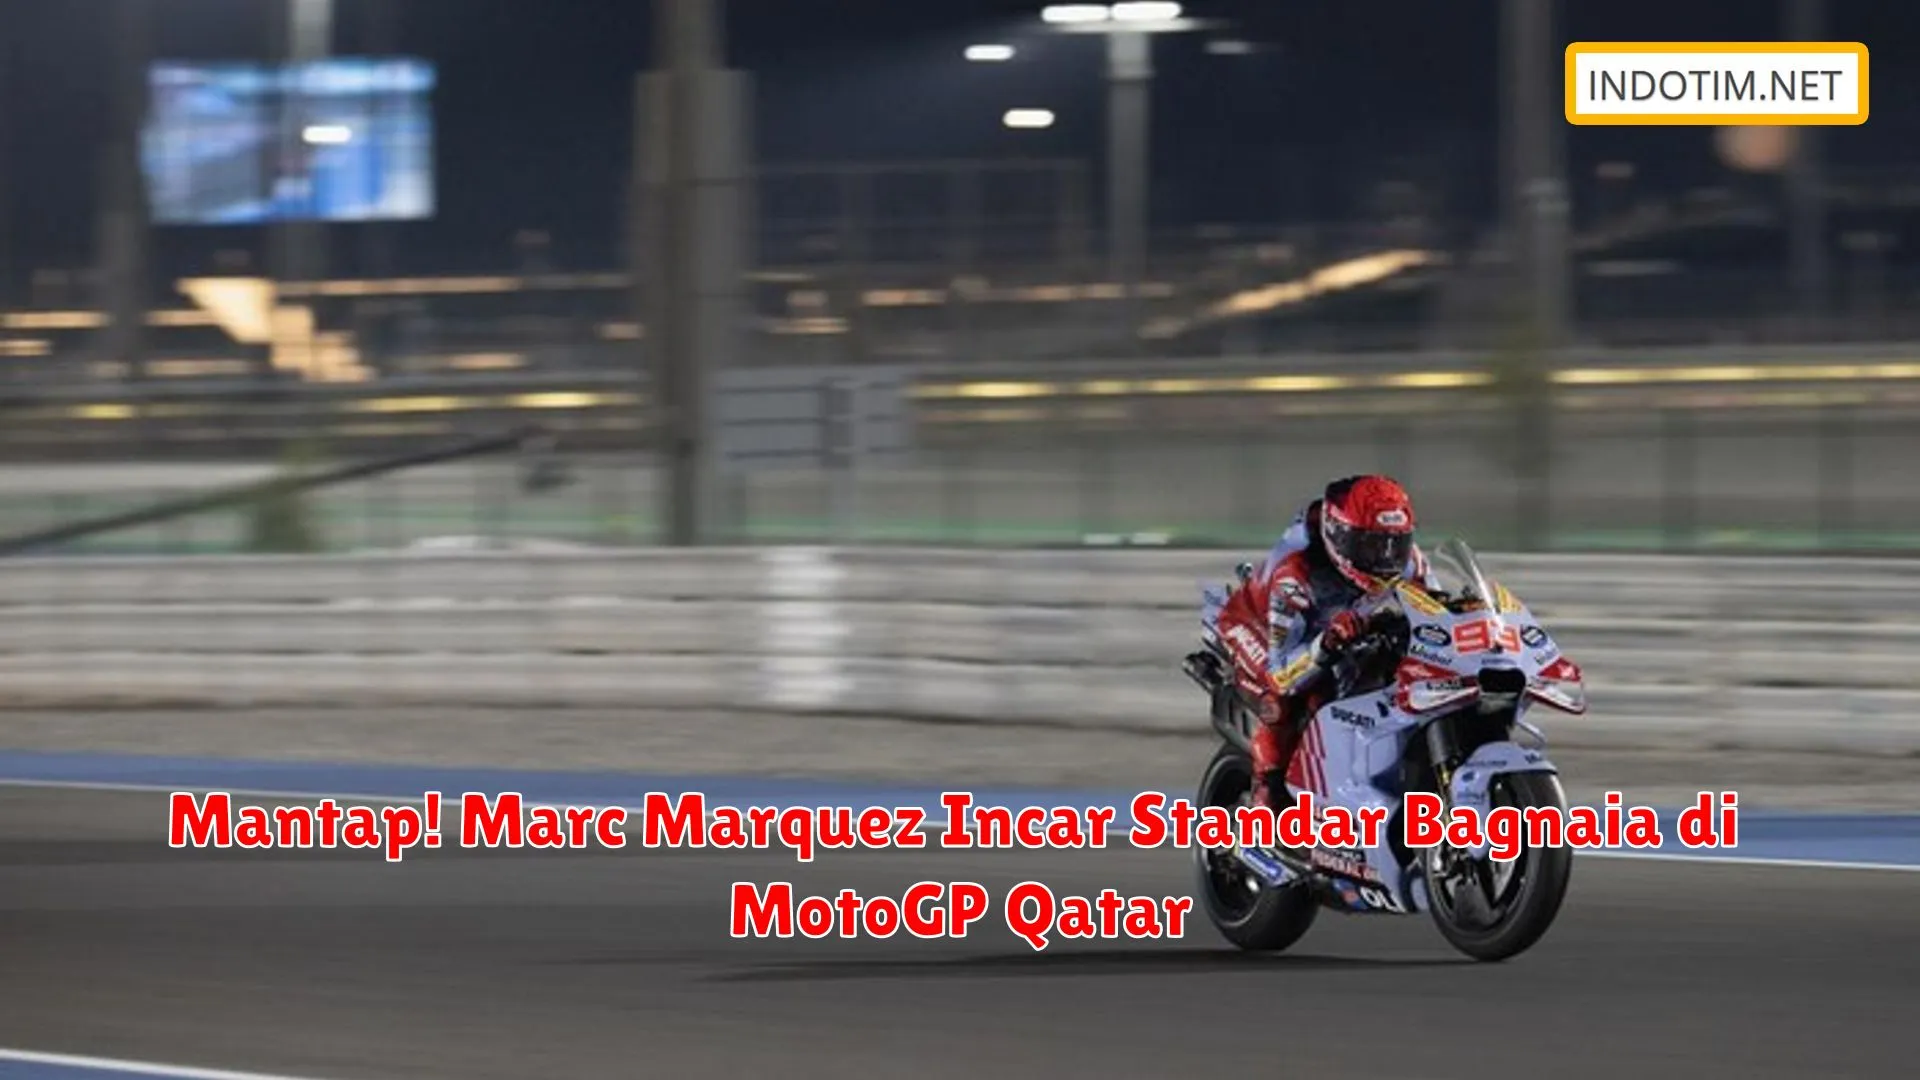 Mantap! Marc Marquez Incar Standar Bagnaia di MotoGP Qatar